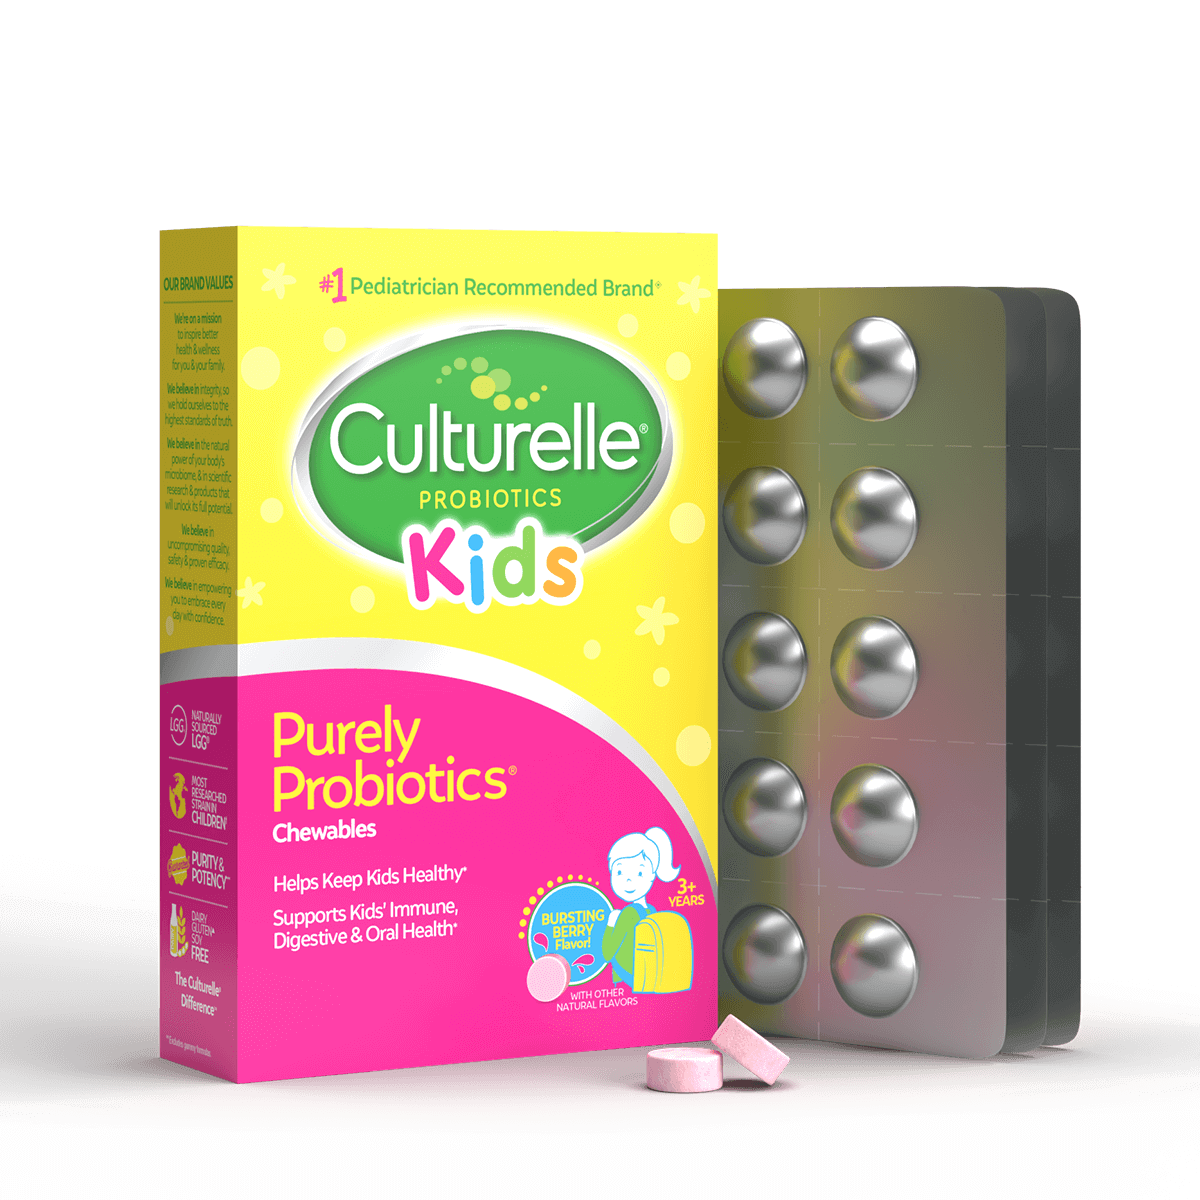 Culturelle® Probiotic Family Bundle